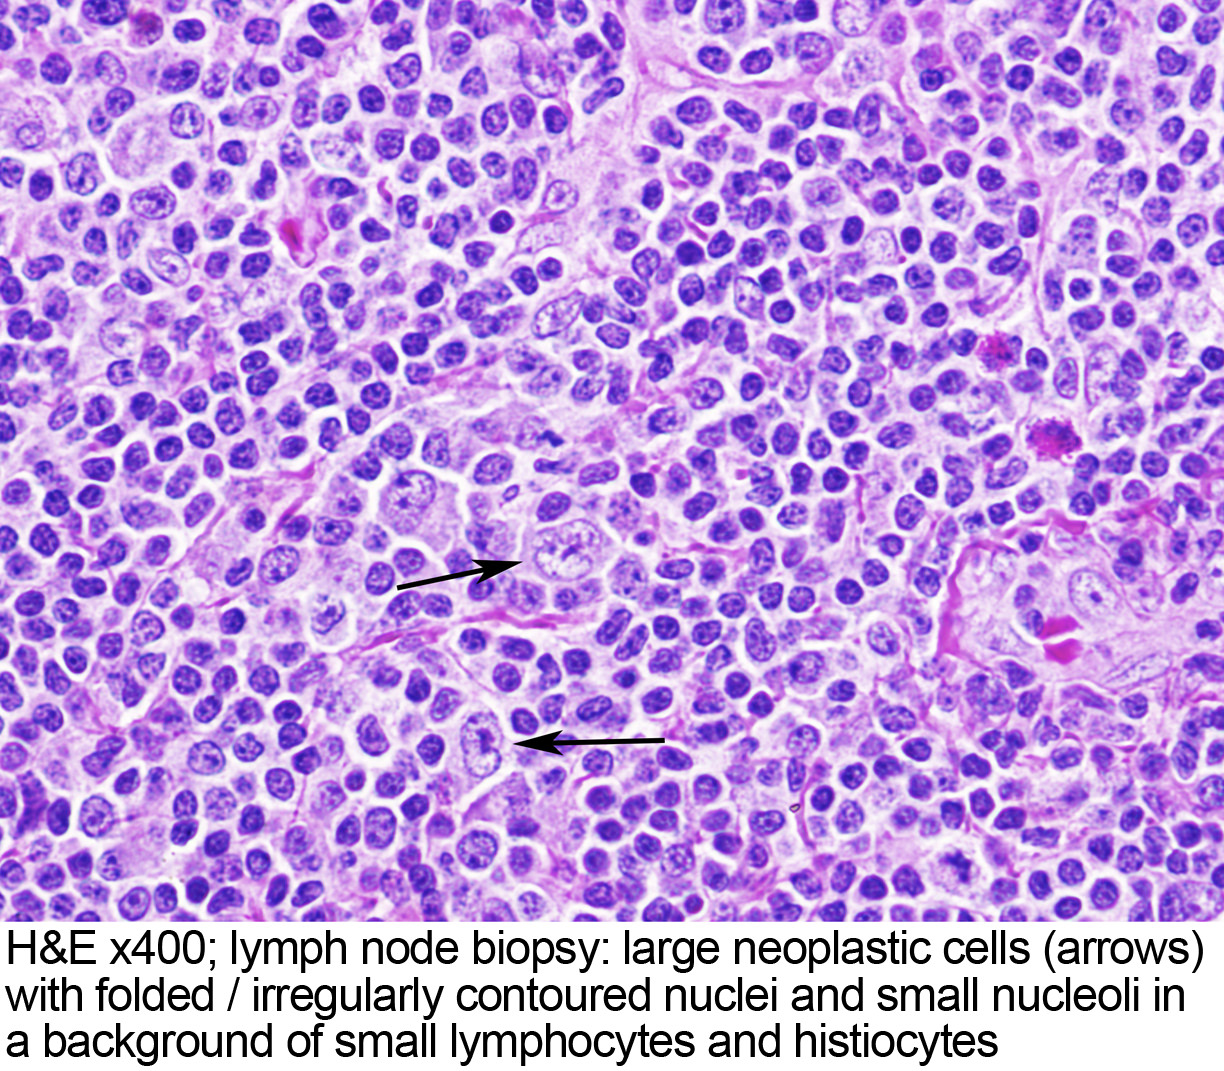 Pathology Outlines Nodular Lymphocyte Predominant Source Image @ www.pathol...